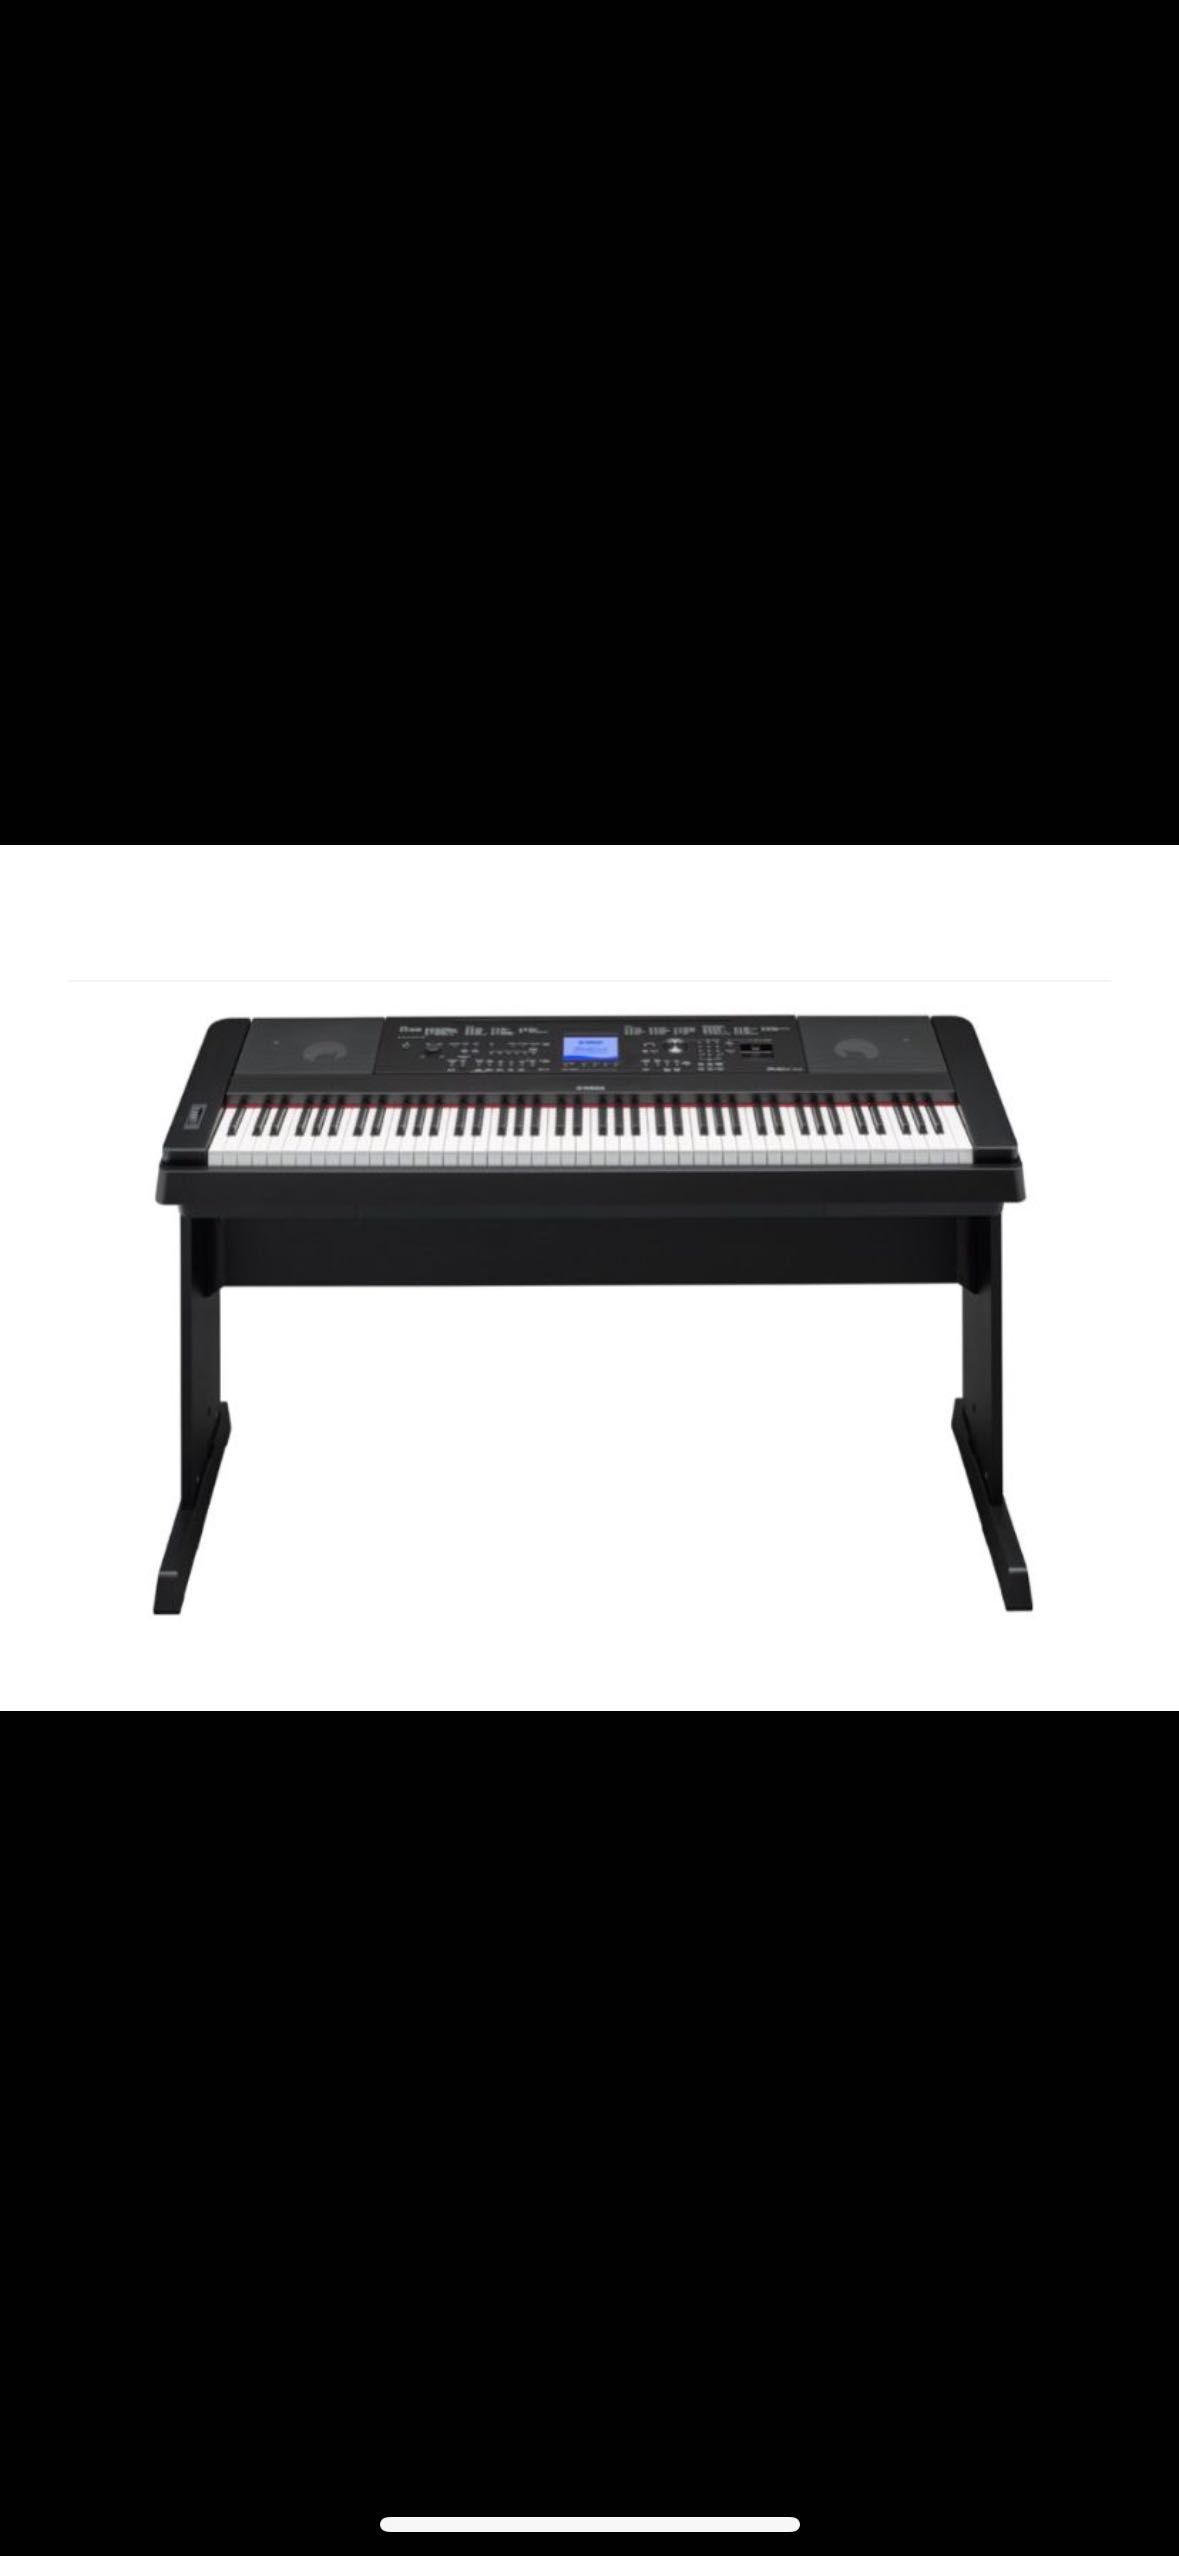 Piano Digital Yamaha DGX-660 em perfeito estado e pouquíssimo uso !!